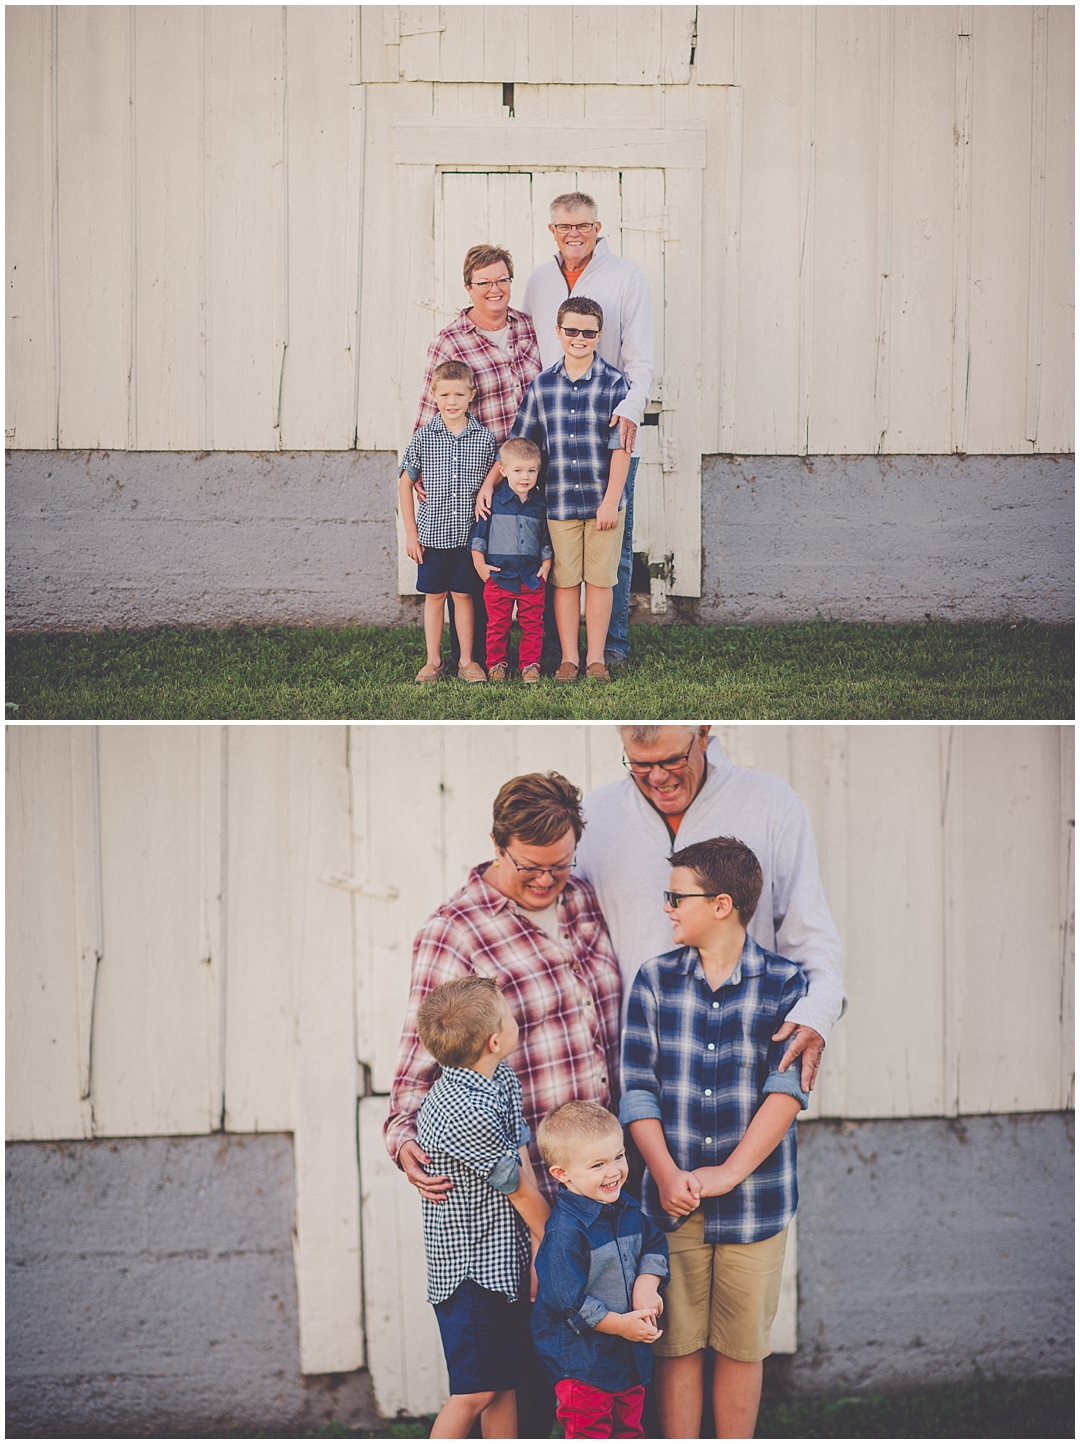 Kara Evans Photographer - Central Illinois Family Photographer - Milford Illinois Family Photos - Iroquois County Photographer - Summer Farm Family Photos